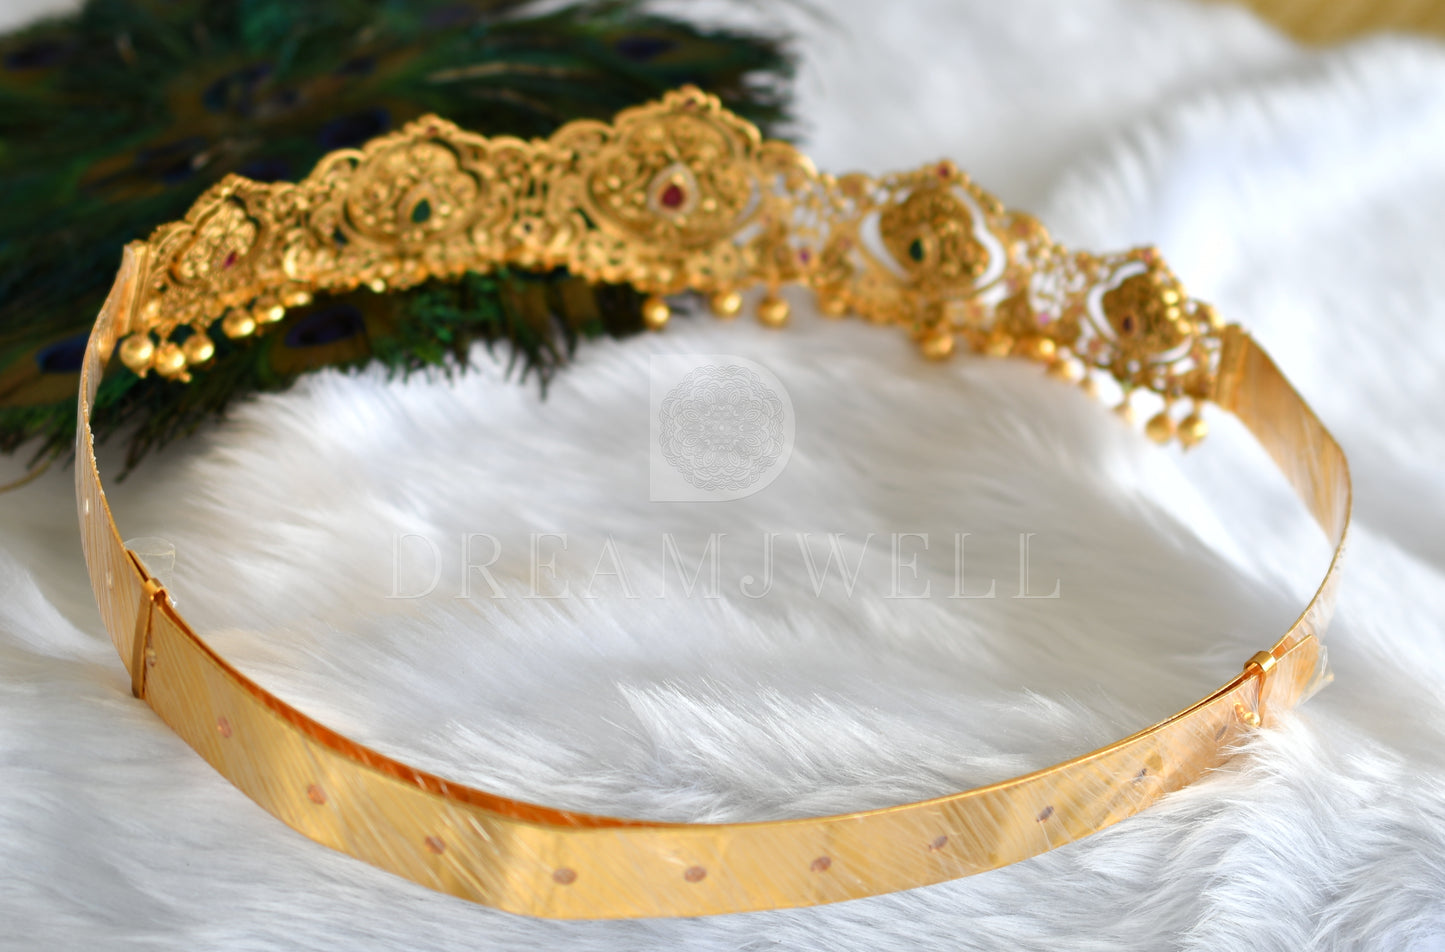 Gold look alike cz ruby-emerald 2 In 1 temple waist belt dj-33205